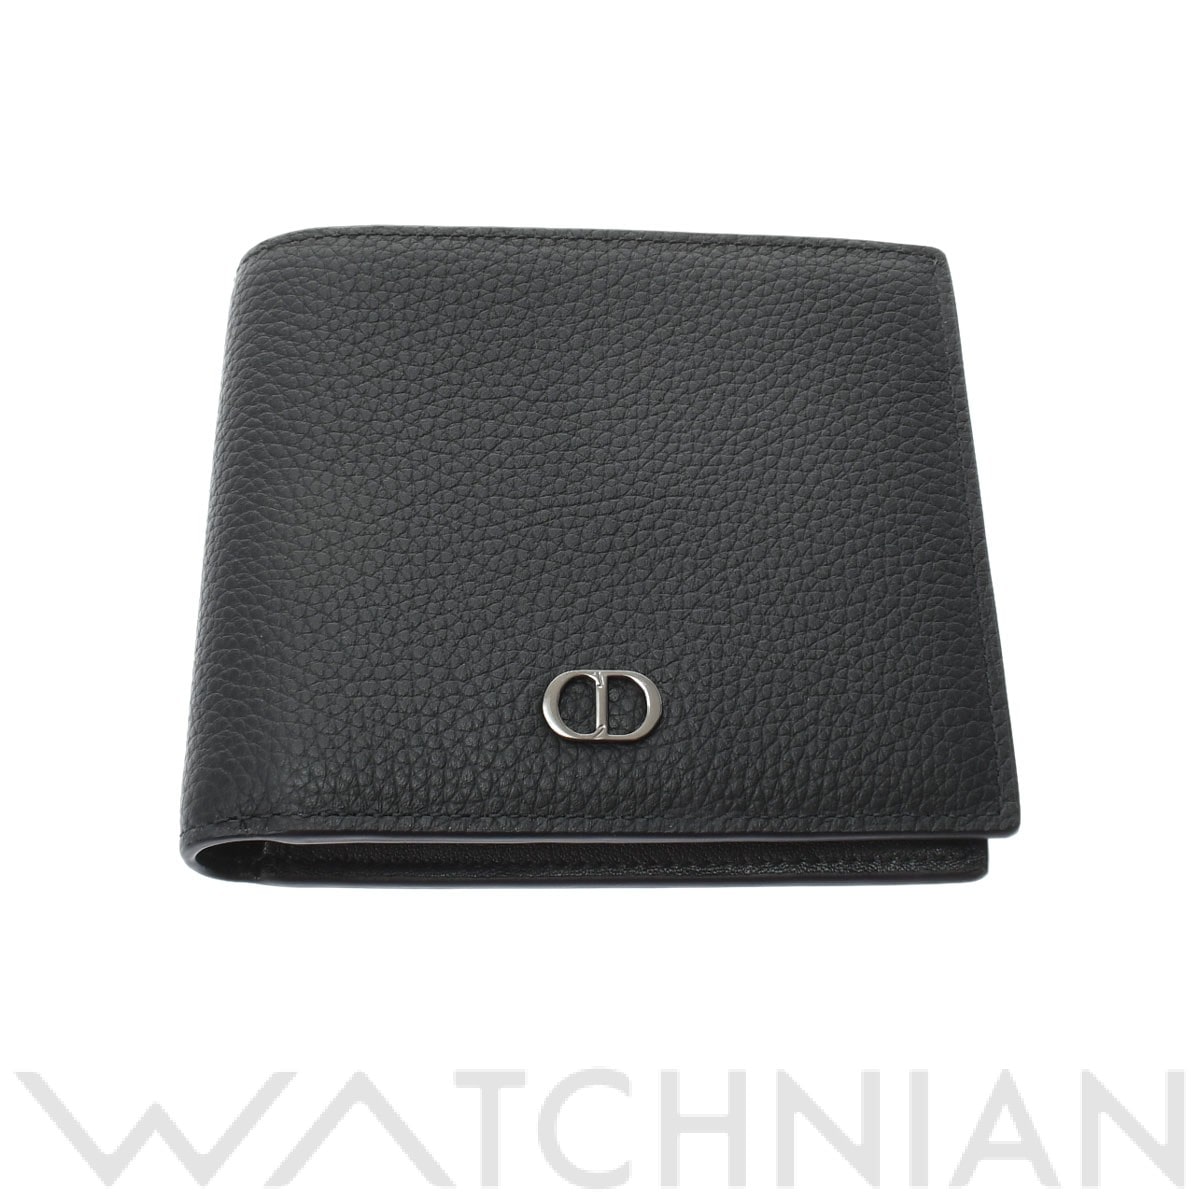 ディオール / Dior CD Icon ウォレット ブラック 2ESBH027CDI H00N グレインドカーフスキン メンズ 財布  【未使用】【purse】